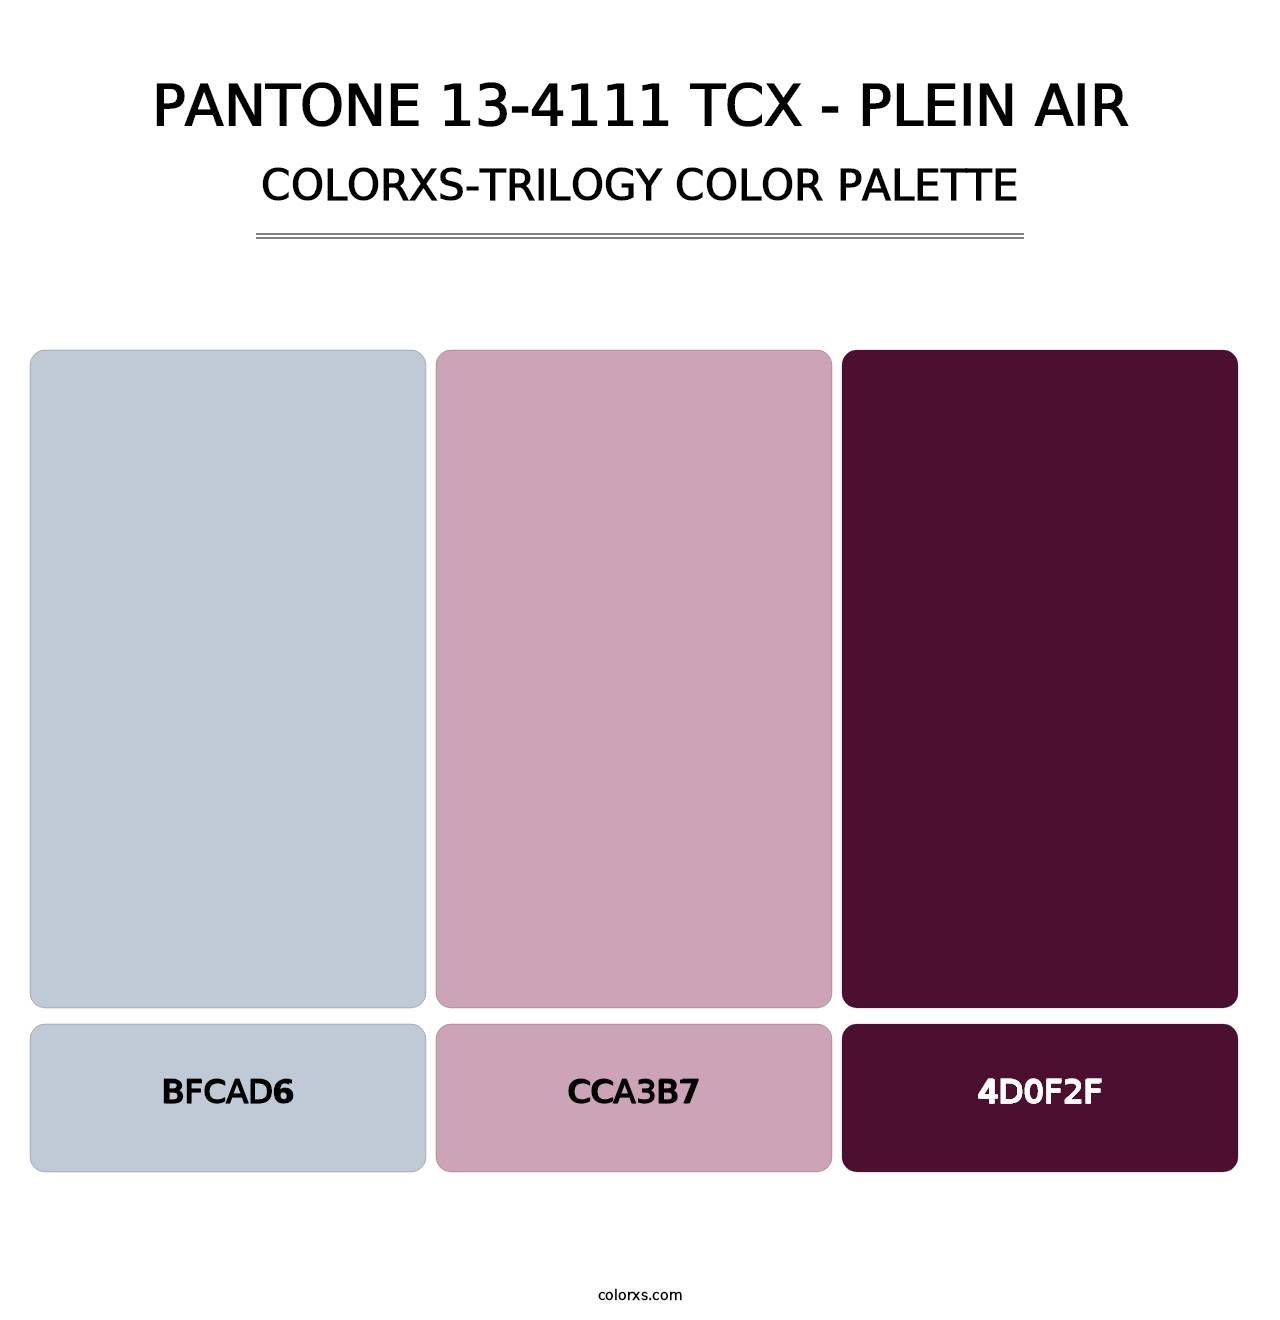 PANTONE 13-4111 TCX - Plein Air - Colorxs Trilogy Palette